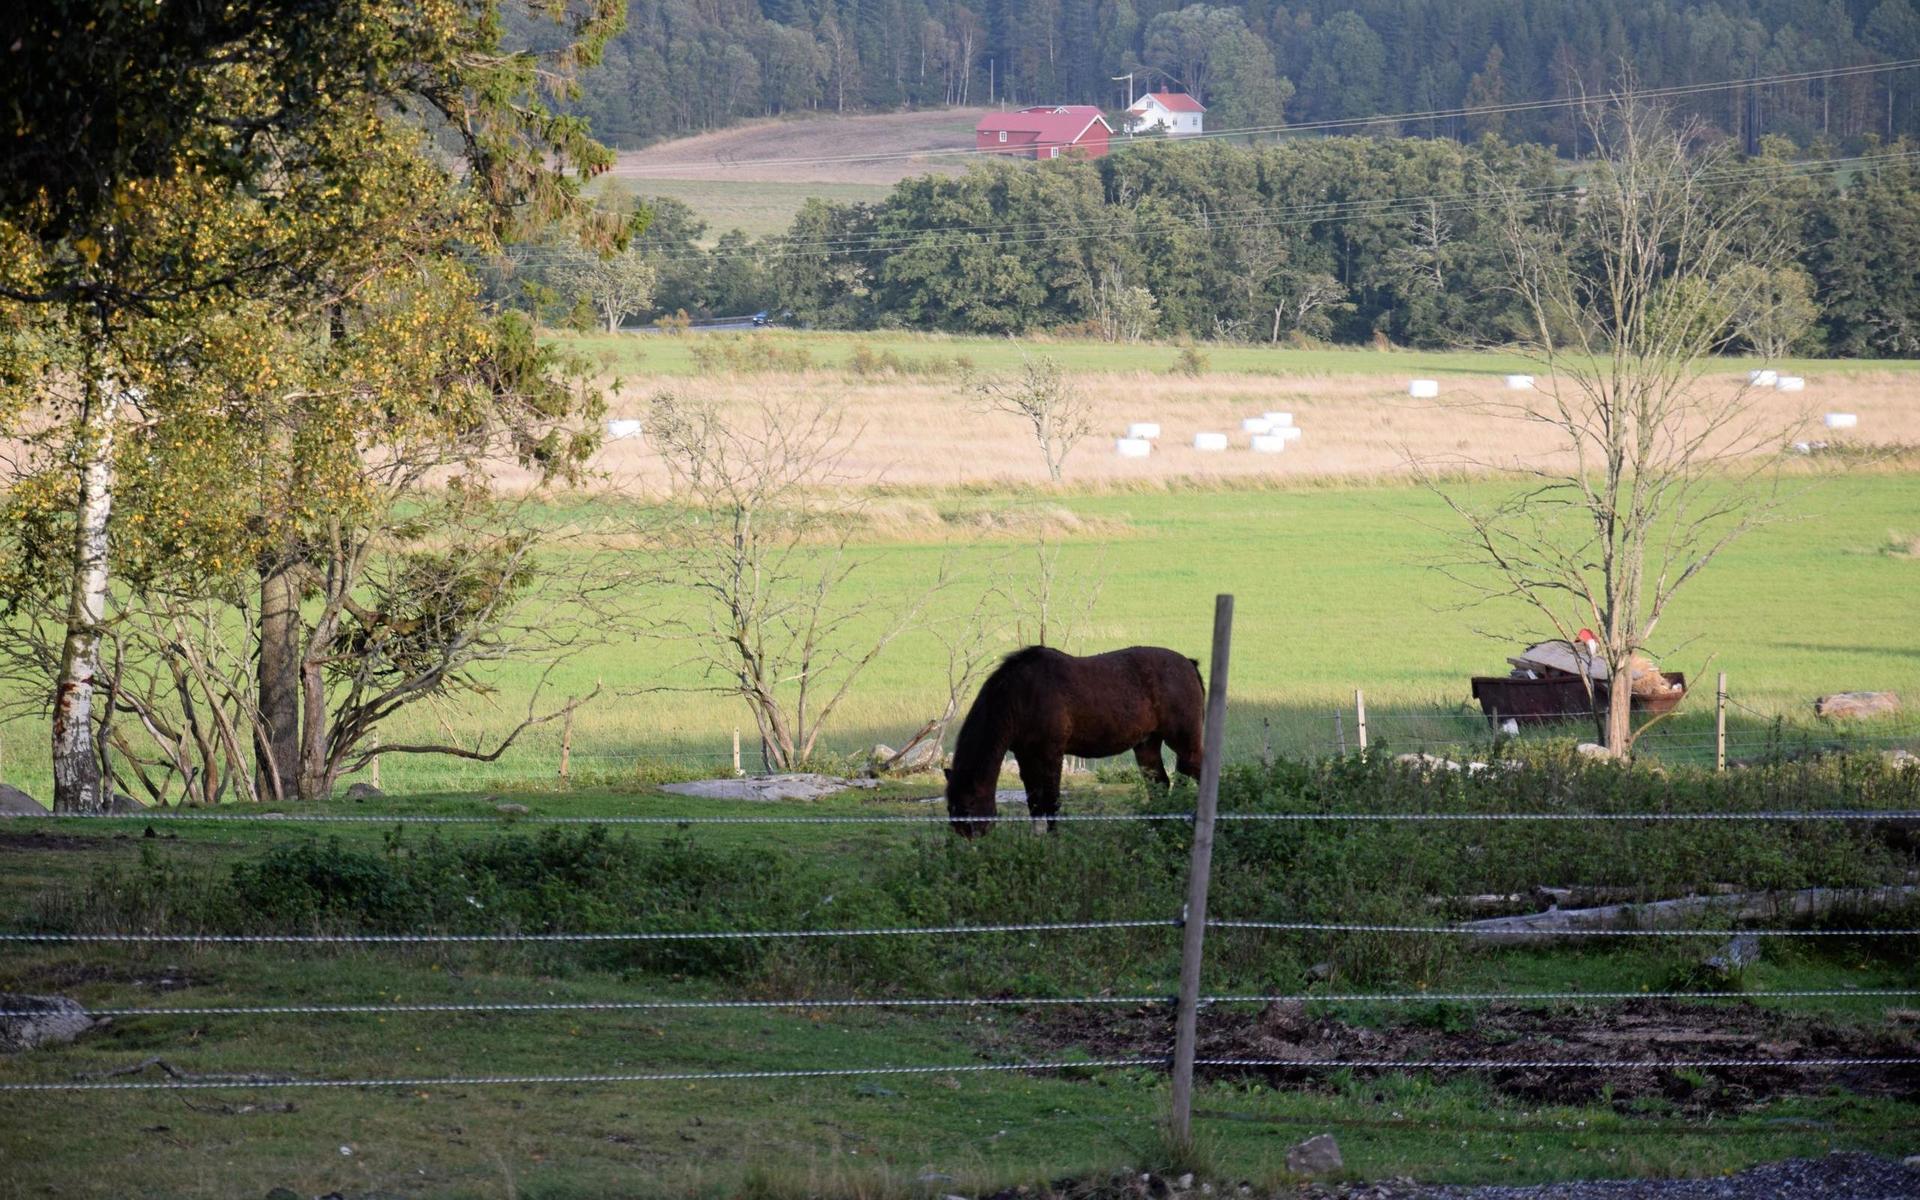 Tanum har flest gårdar och aktiva lantbrukare i Bohuslän.